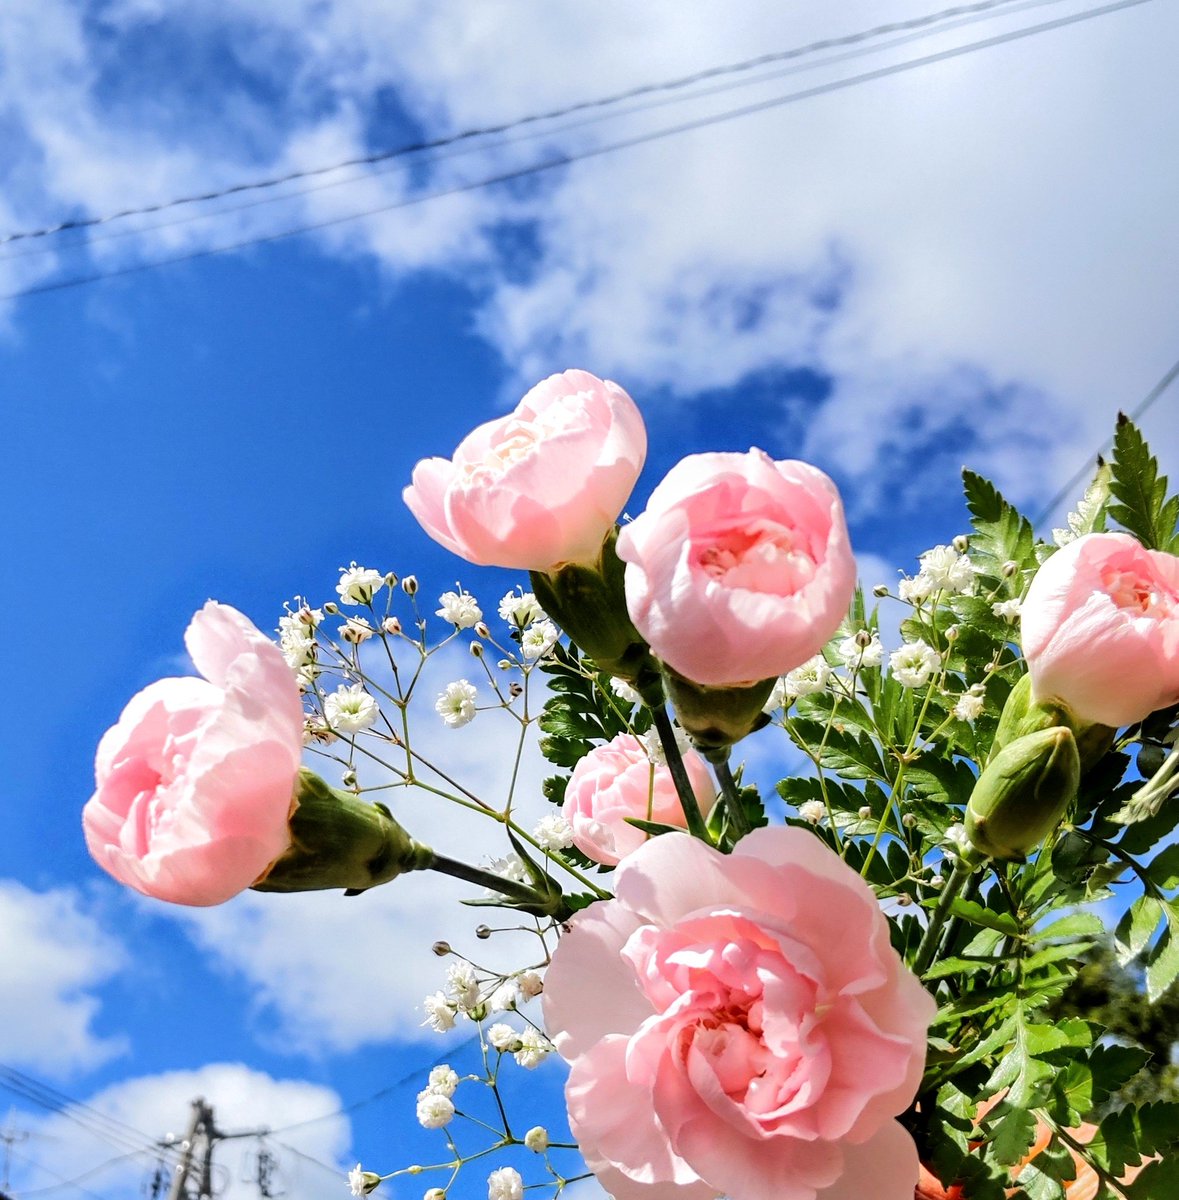 ☁️☀️☁️☀️☁️☀️☁️☀️

心なごませる優しいピンク🩷
花瓶のカーネーションを
青空のもとで…

札幌　AM9:44    13℃
#TLを花でいっぱいにしよう 
#カーネーション